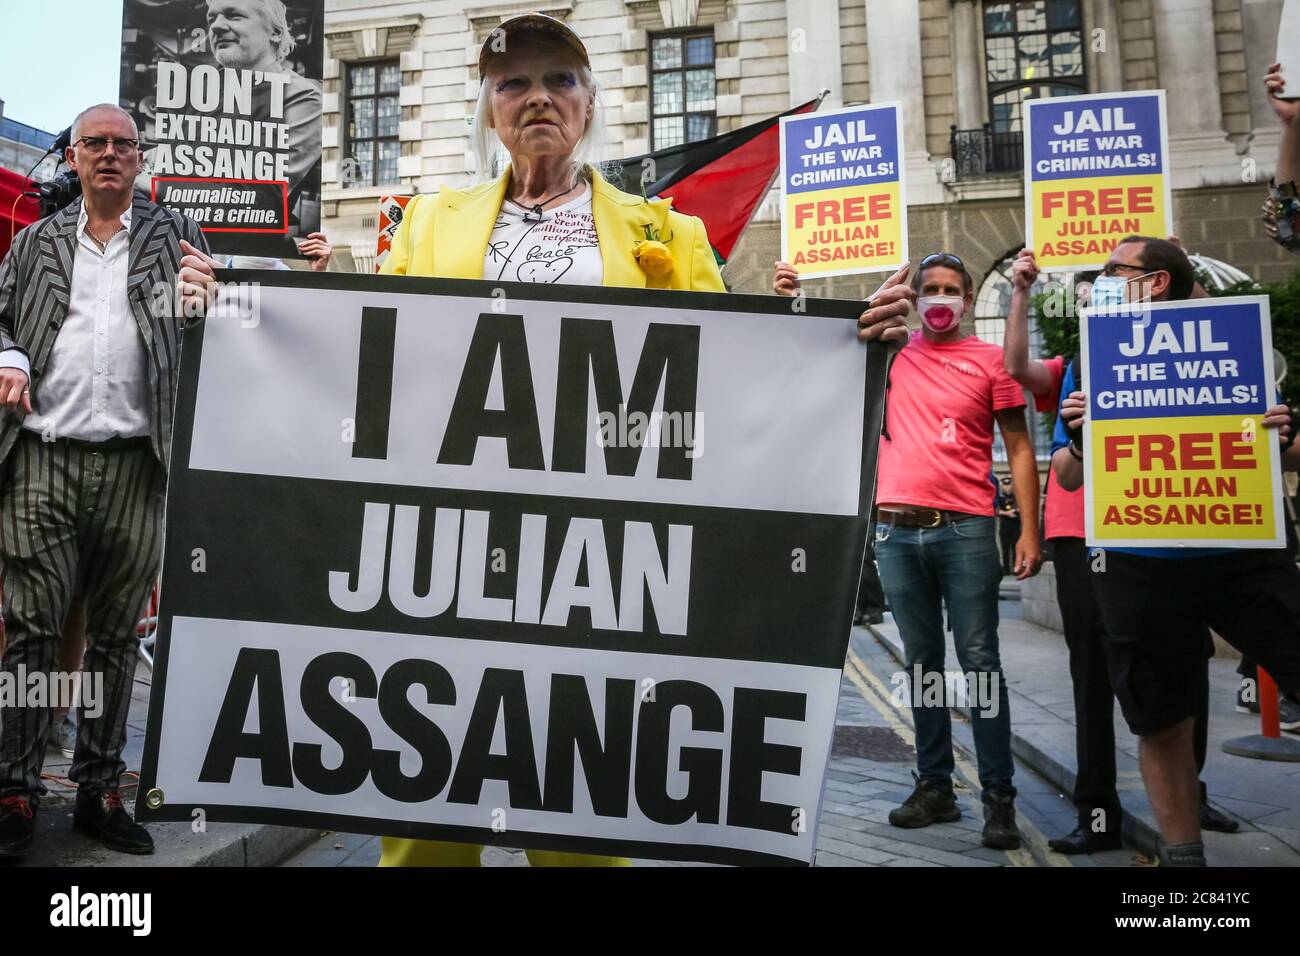 Londres, Reino Unido, 21 de julio de 2020. Dame Vivienne Westwood está sosteniendo la bandera "Yo soy Julian Assange" en su protesta frente a la Corte Penal Central de Old Bailey, en protesta por la extradición de Julian Assange por los Estados Unidos. Westwood está vestido con un traje de pantalón amarillo, que enfigura la metáfora de la mina de carbón de Canarias, para ilustrar que Assange está siendo sacrificado. Más tarde se presenta frente al Viejo Bailey con su mensaje. Crédito: Imageplotter/Alamy Live News Foto de stock